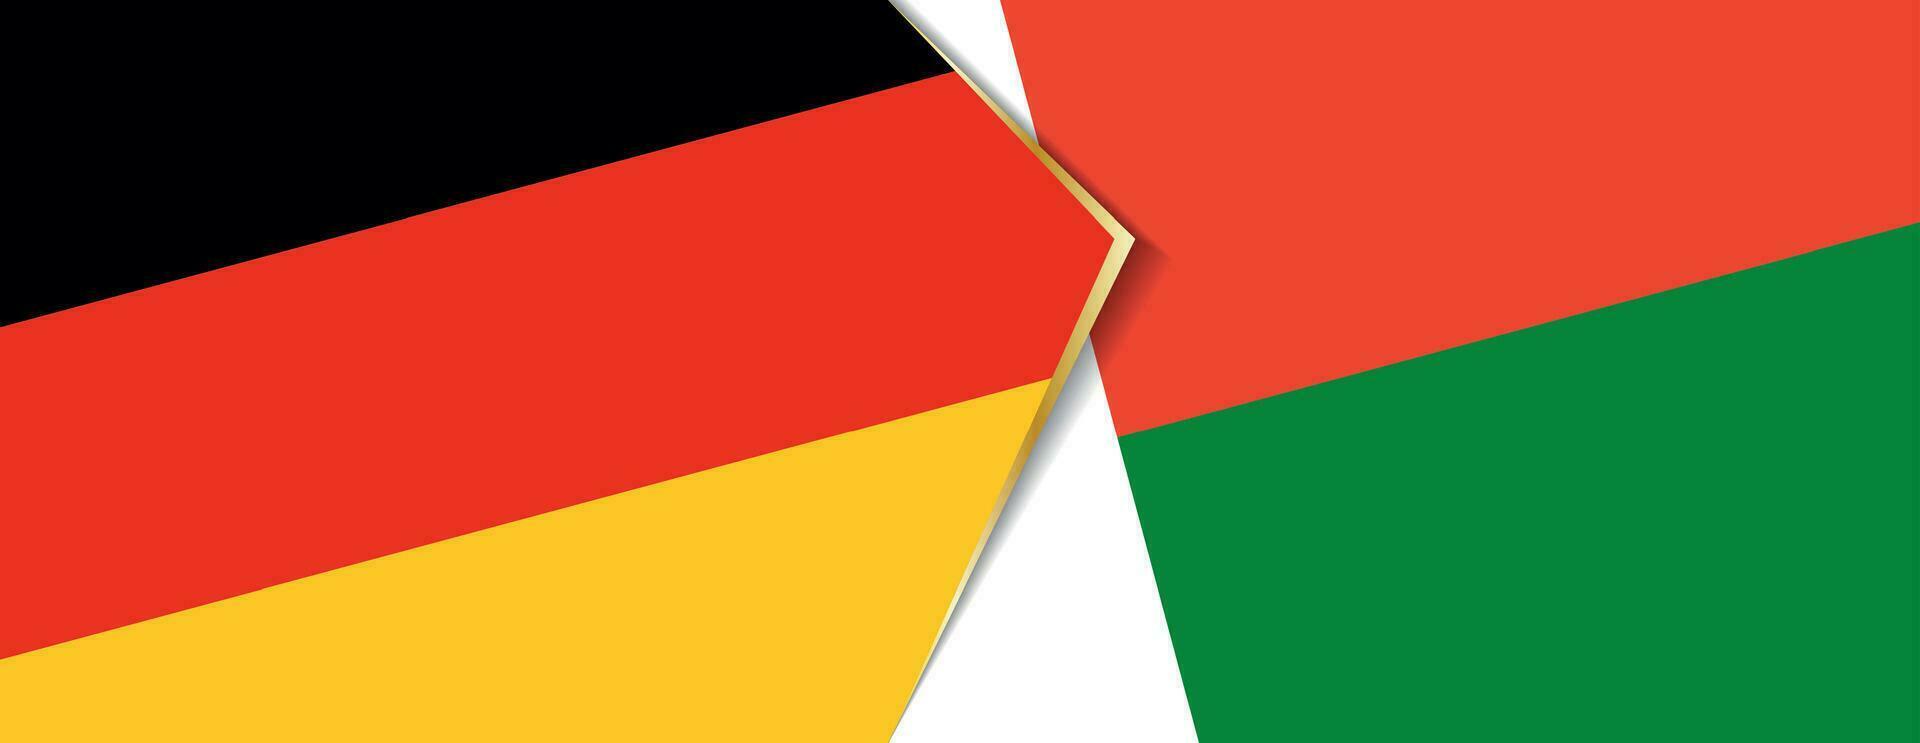 Tyskland och madagaskar flaggor, två vektor flaggor.